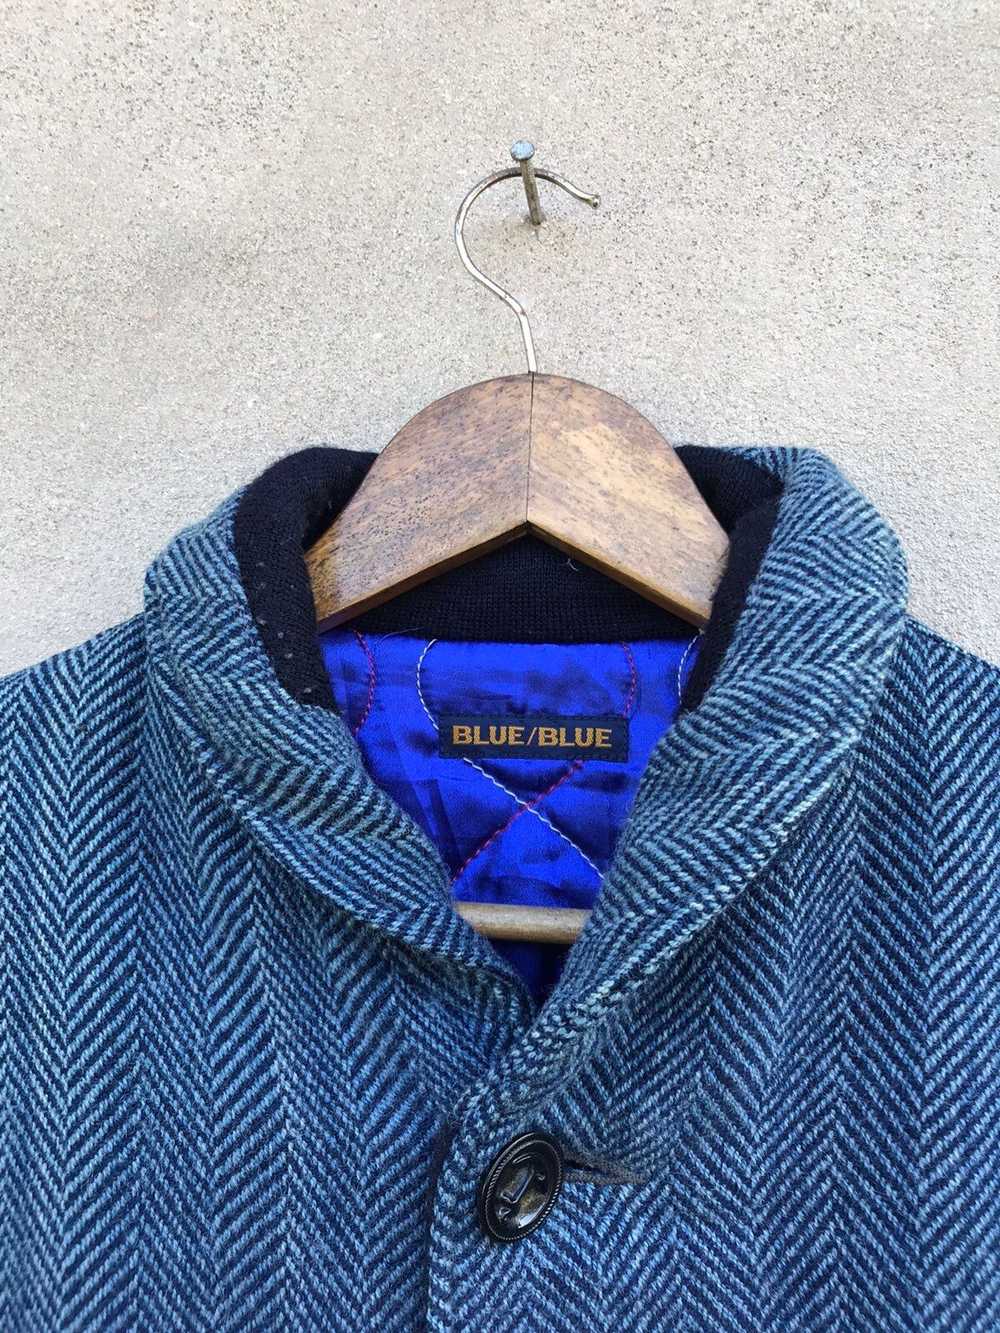 Blue Blue Japan × Cashmere & Wool × Indigo VINTAG… - image 6